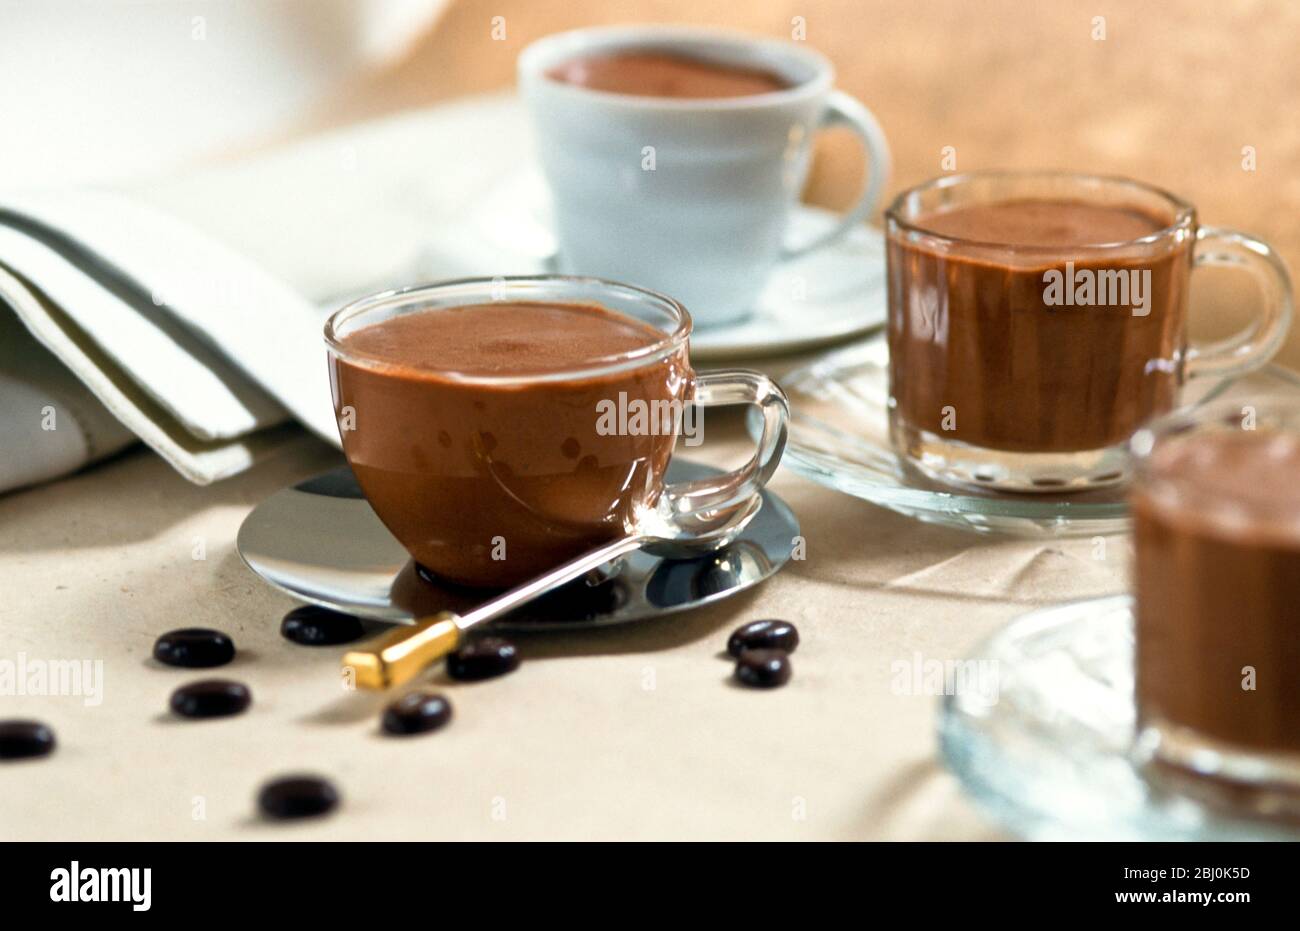 Schokoladenmousse in einer Vielzahl von hübschen Tassen mit Kaffeebohnenschokolade auf dem Tisch verteilt serviert - Stockfoto